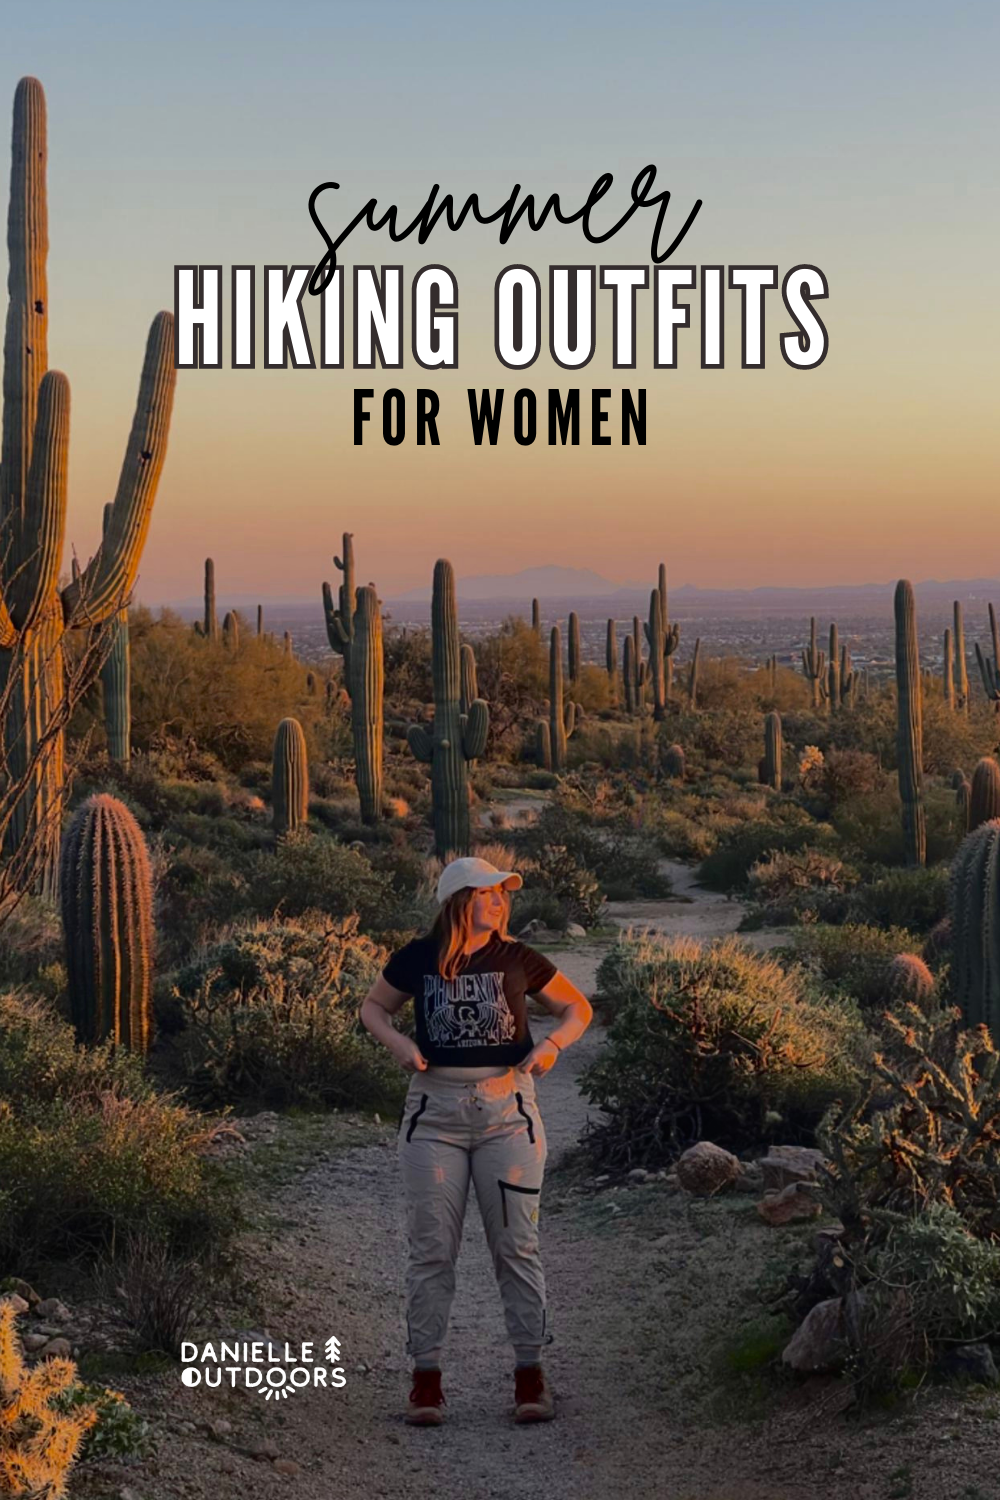 Hiking outfit  Hiking outfit, Summer hiking outfit women, Summer hiking  outfit